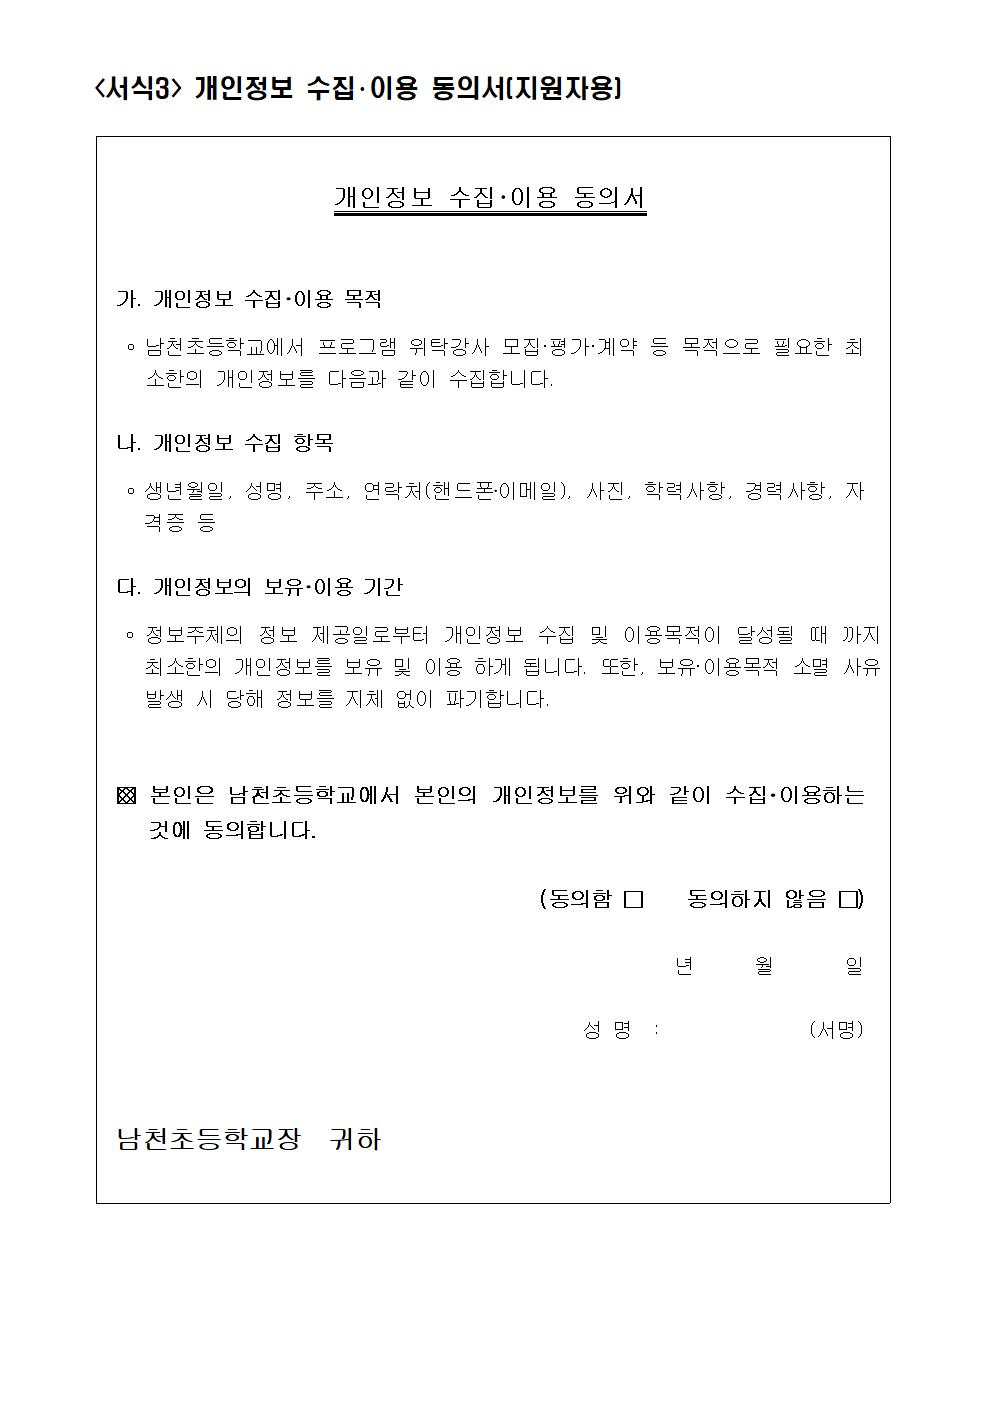 생존수영 실기교육 강사 채용 공고003